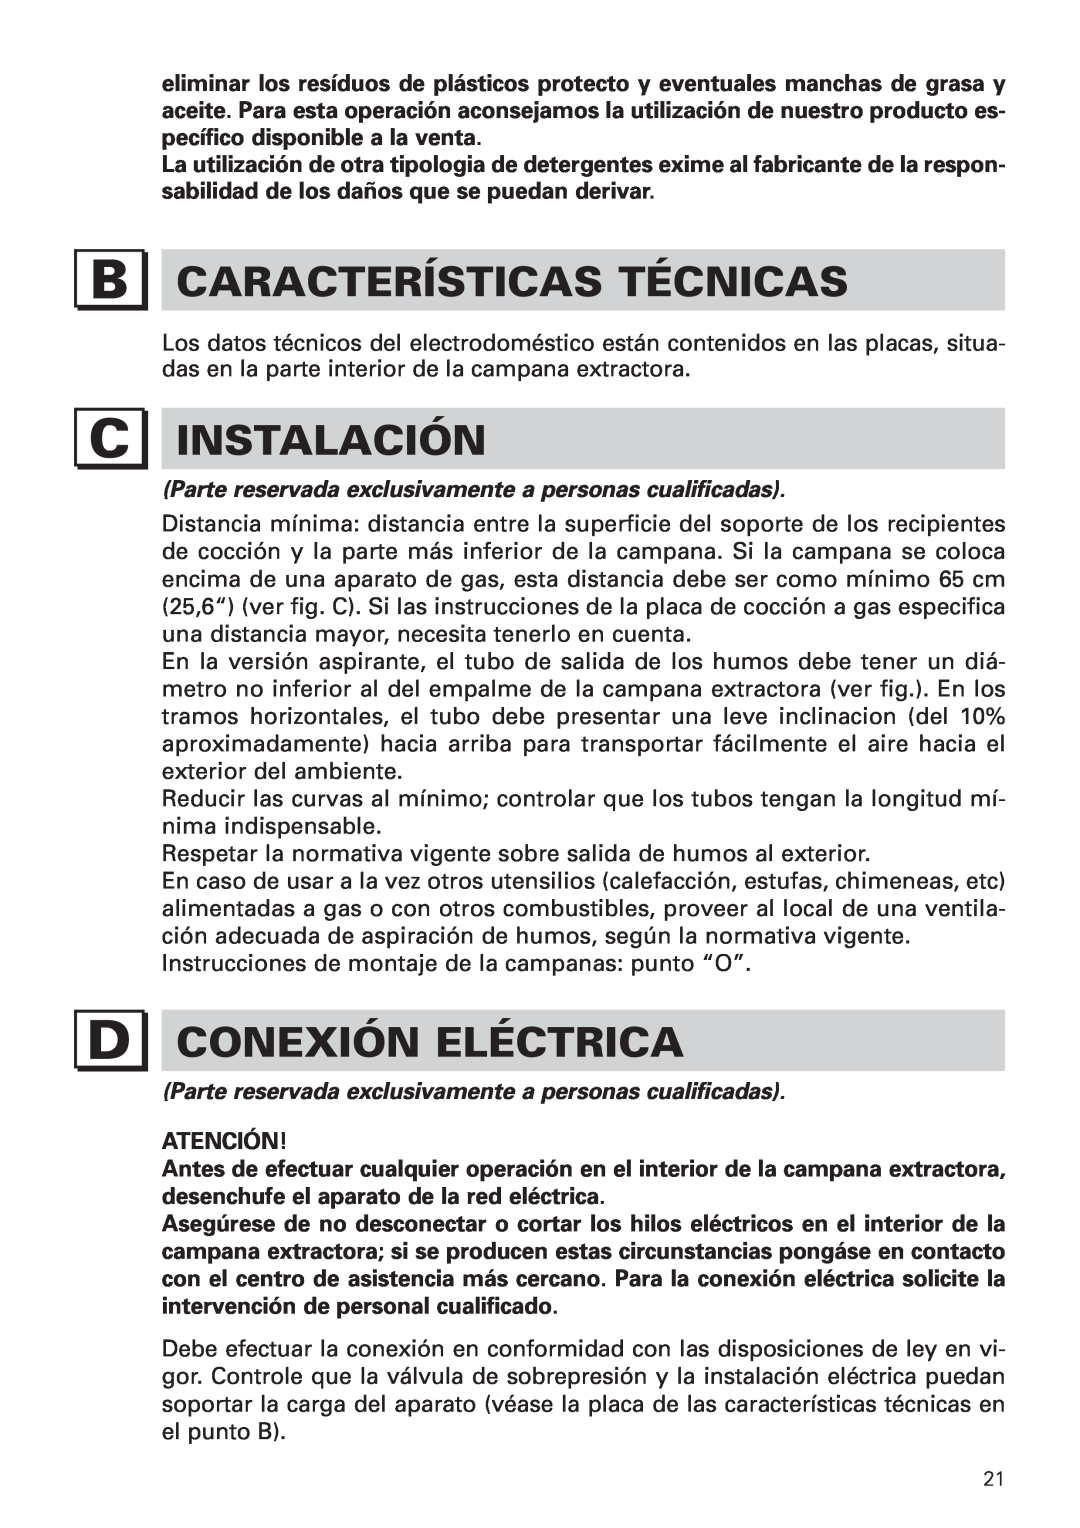 Bertazzoni KIN 36 PER X, KIN 30 PER X manual Características Técnicas, Instalación, Conexión Eléctrica 